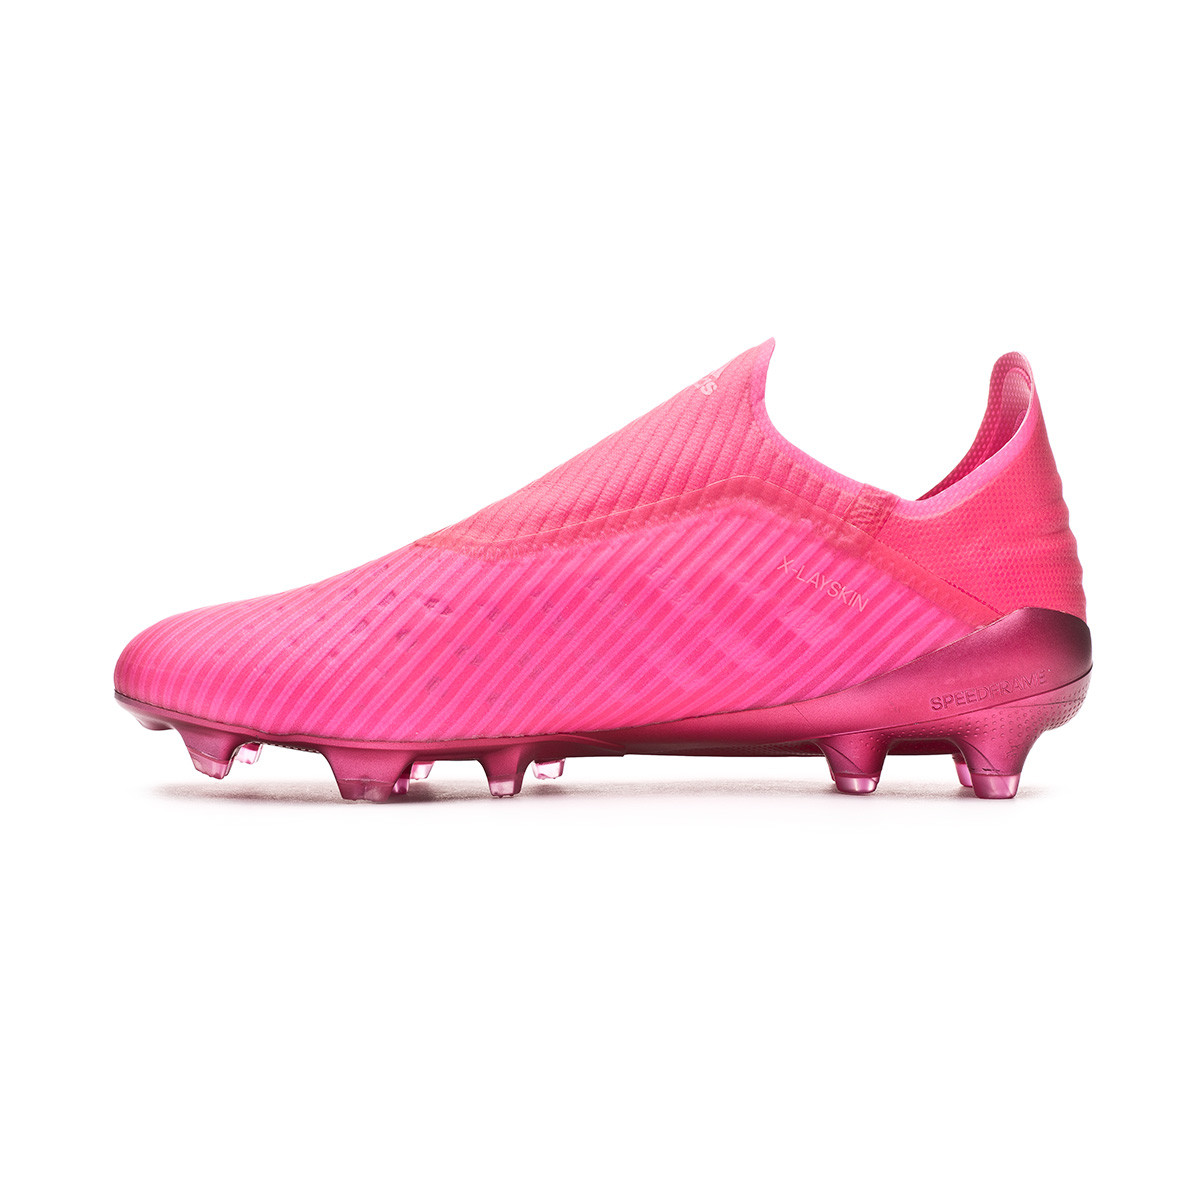 adidas x 19 shock pink